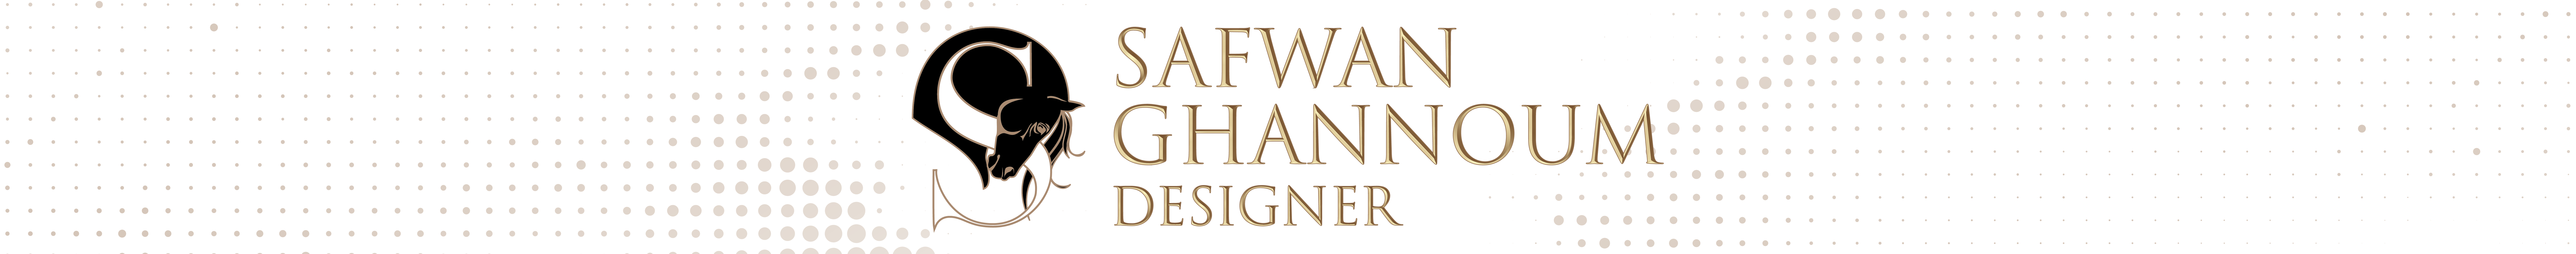 Safwan Ghannoum のプロファイルバナー